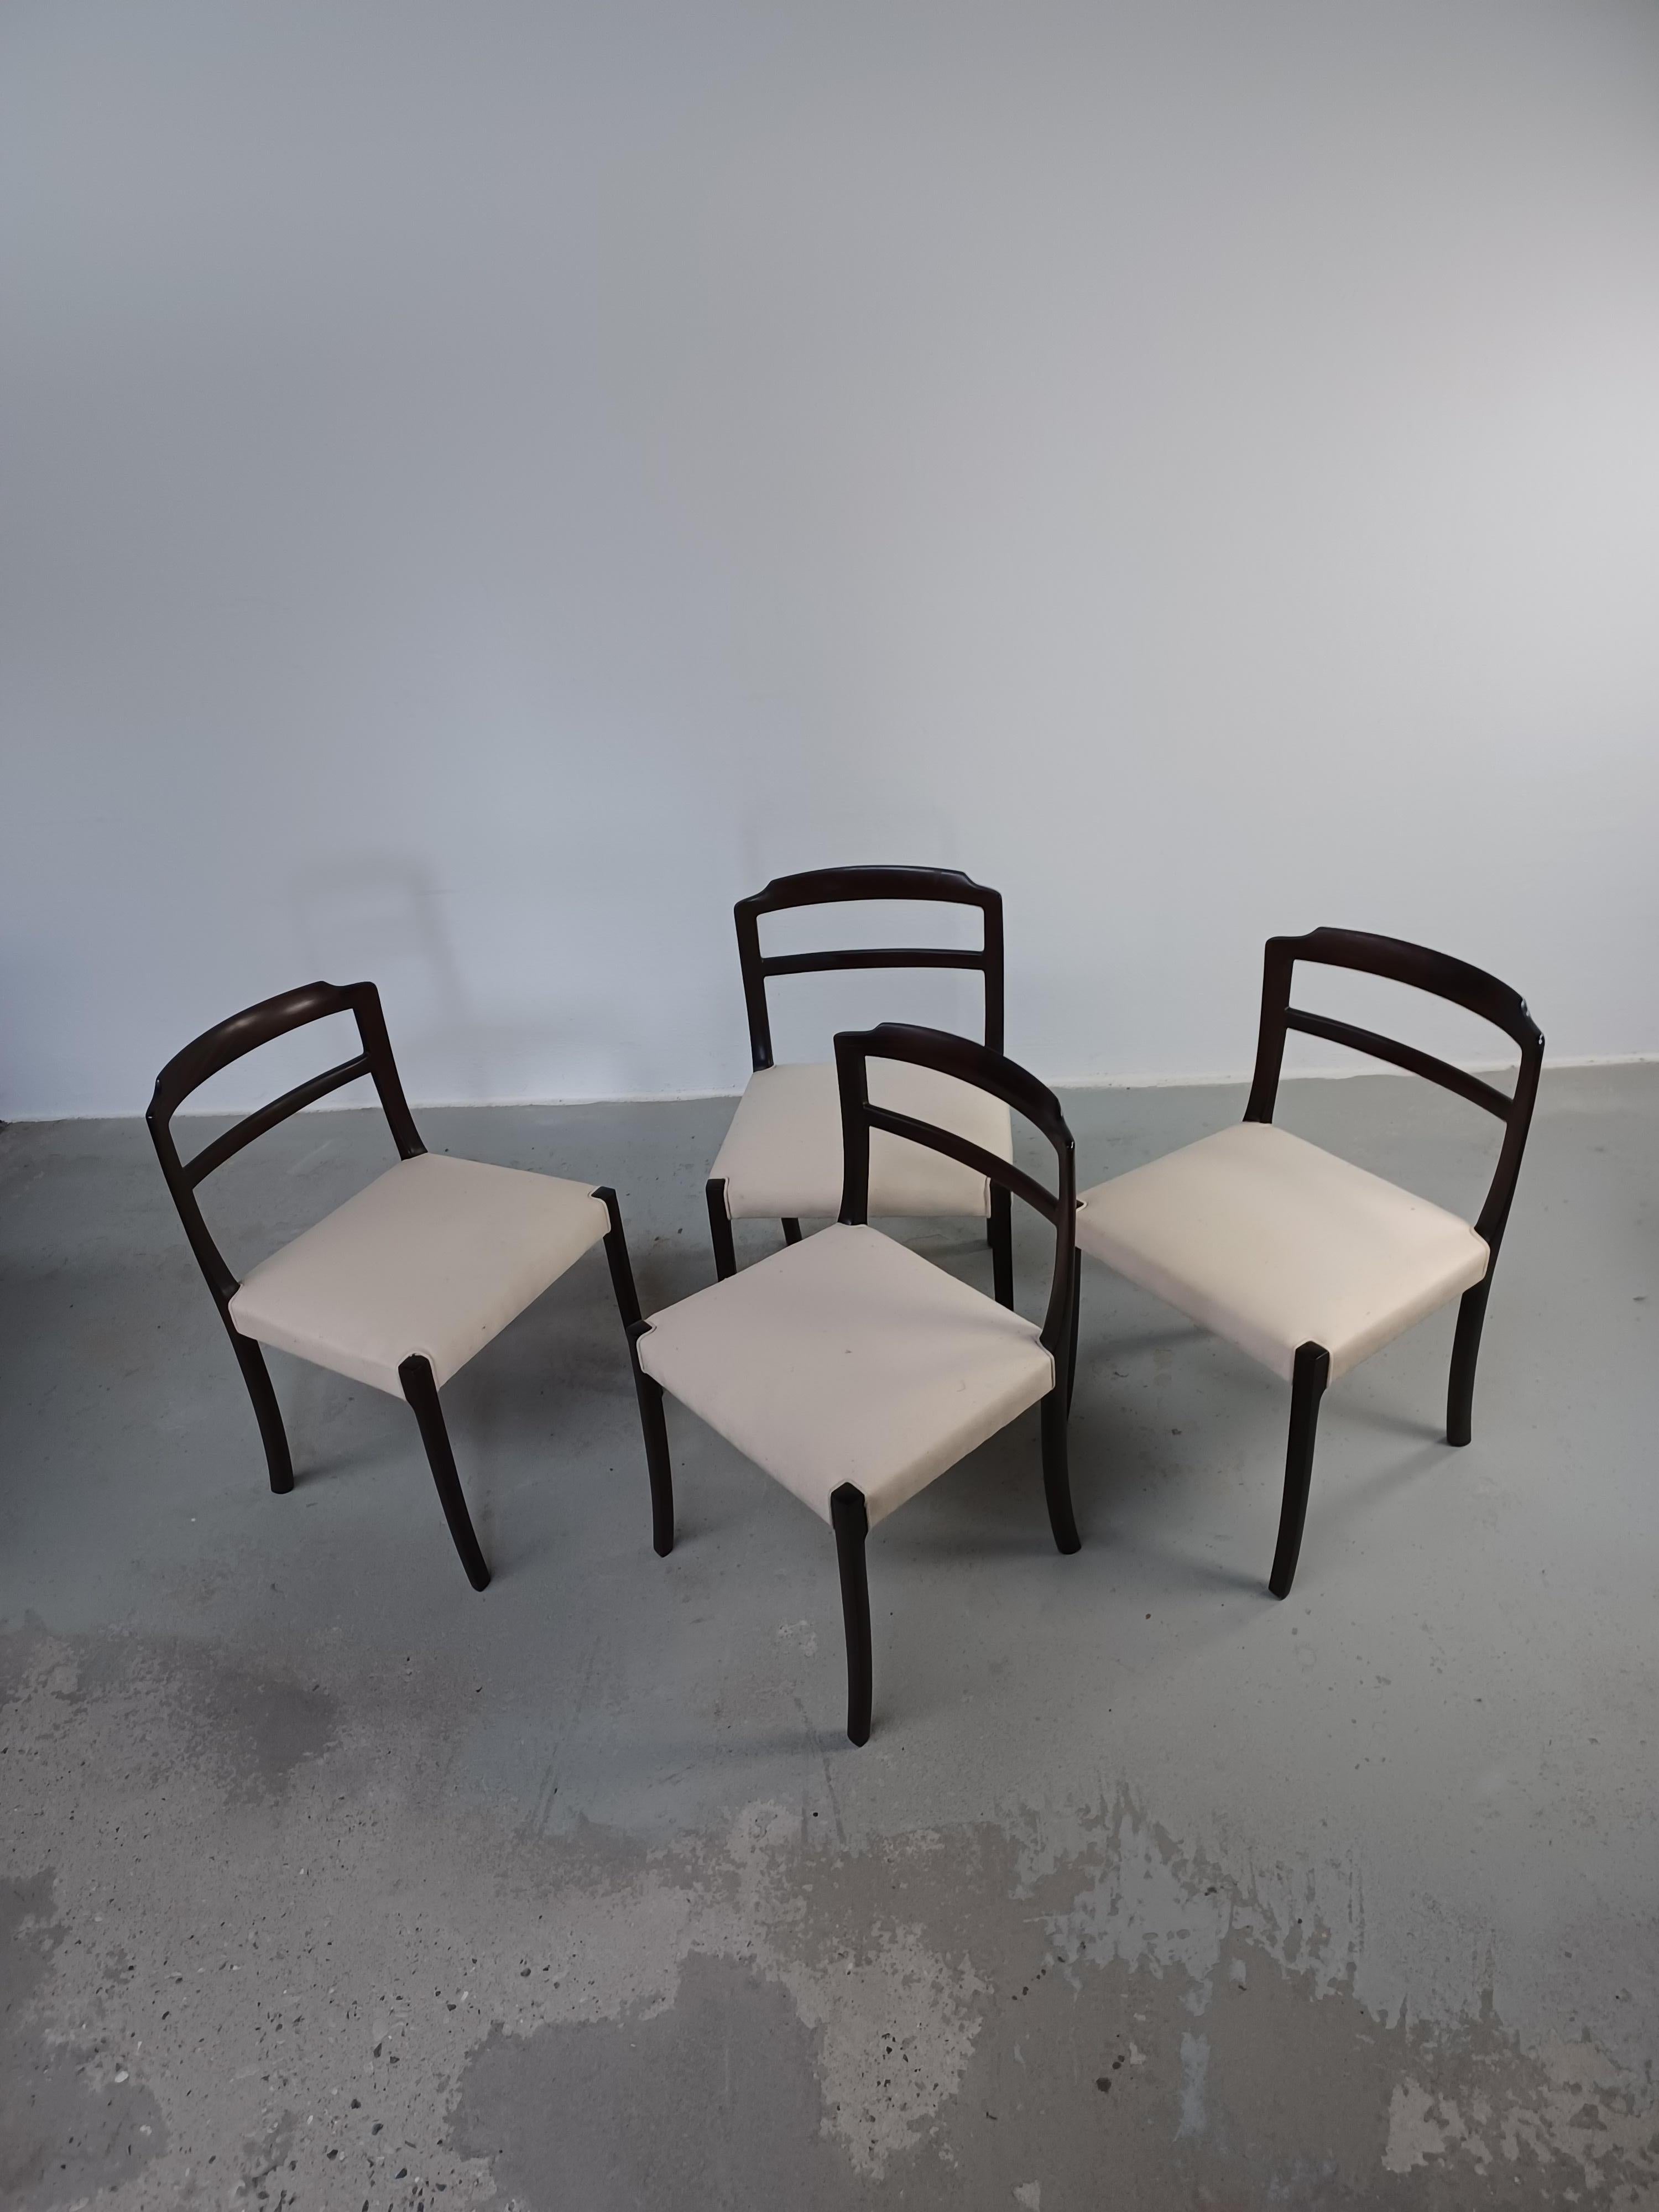 1960er Jahre vier vollständig restaurierte Ole Wanscher Mahagoni-Esszimmerstühle, individuell gepolstert

Ole Wanschers ausgeprägter Sinn für Proportionen und seine hohe handwerkliche Qualität werden durch die elegante Schwalbenschwanzverbindung an